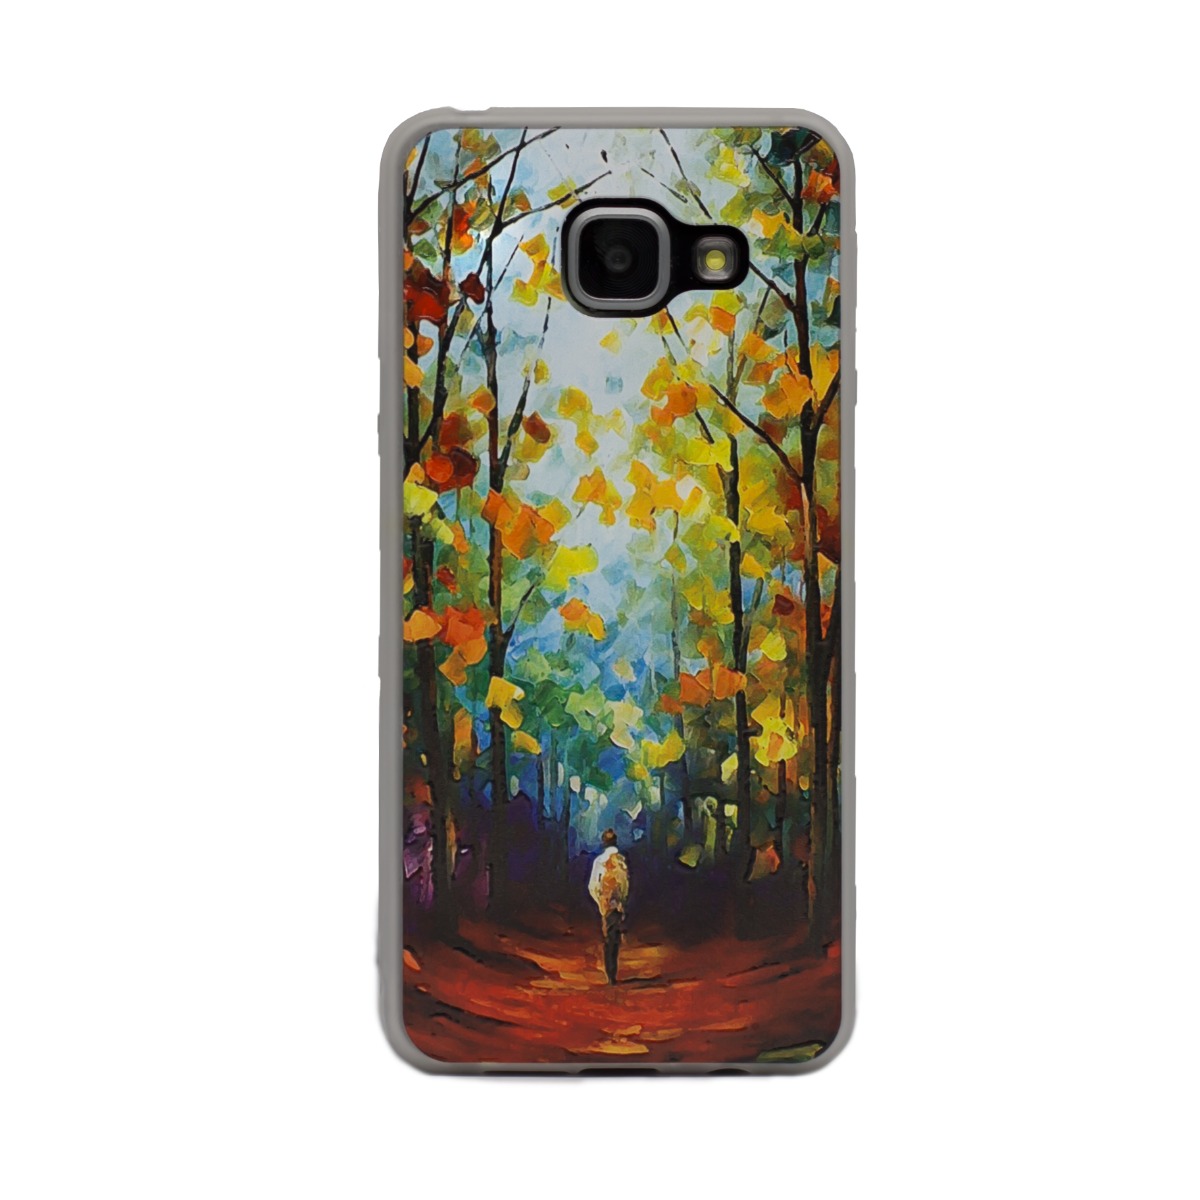 Carcasa Fashion Samsung Galaxy A3 2016, Autumn Painting thumb